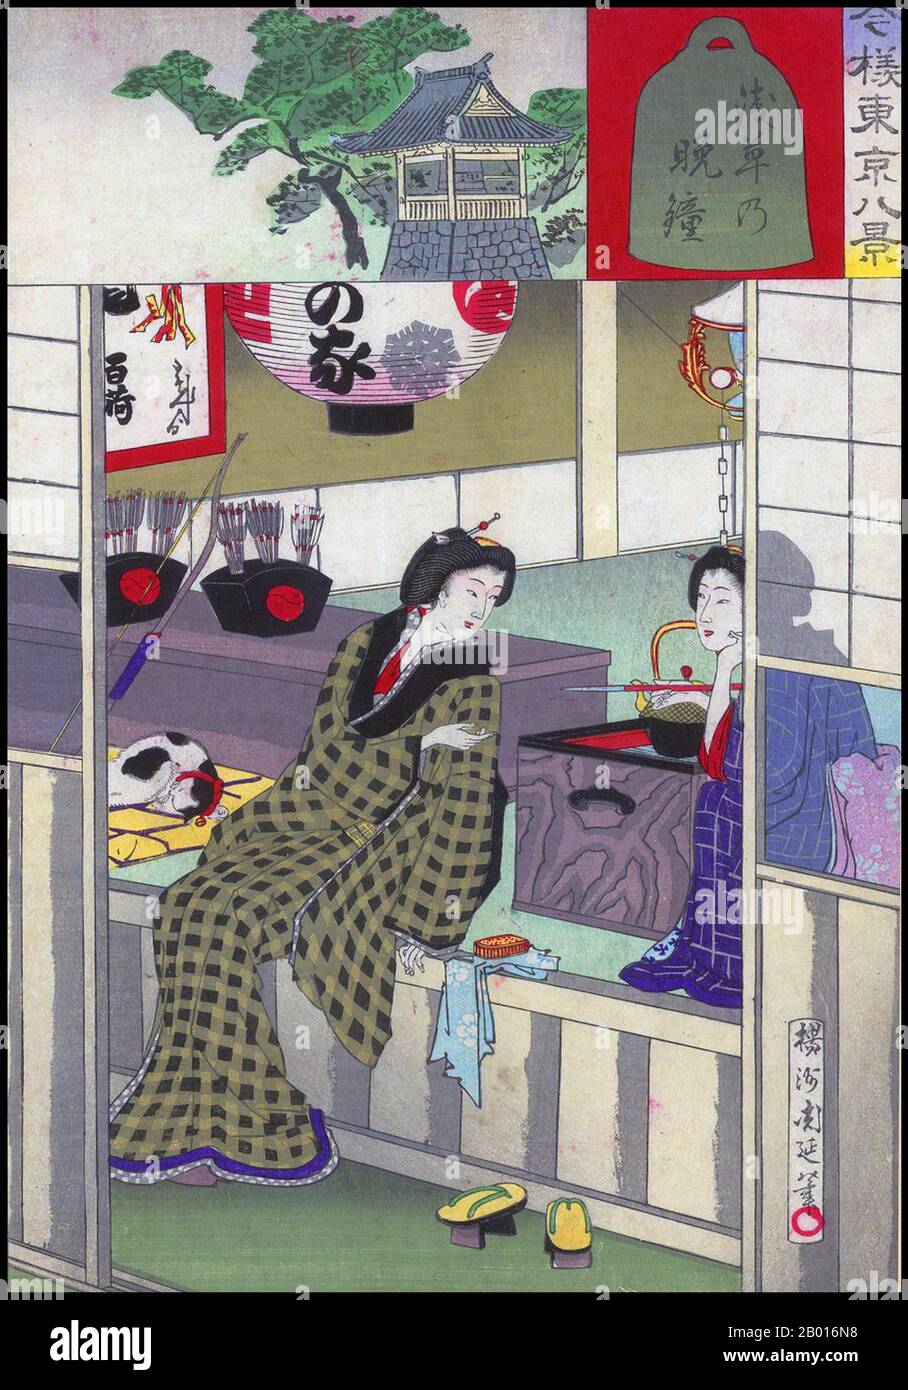 Japon: Deux geishas se détendent après avoir amusé un client; les décors montrant la cloche du couvre-feu à Asakusa.Impression de blocs de bois Ukiyo-e par Toyohara Chikanobu (1838-1912), 1888.Pendant la plus grande partie du XXe siècle, Asakusa a été le principal quartier de divertissement de Tokyo.Le Rokku ou 'Sixth District' était célèbre comme quartier de théâtre, avec des cinémas célèbres tels que le Denkikan.La zone a été lourdement endommagée par les raids américains lors de la Seconde Guerre mondiale, en particulier lors du bombardement de Tokyo en mars 1945.La région a été reconstruite après la guerre, mais a maintenant été surpassée par Shinjuku et d'autres régions colorées. Banque D'Images